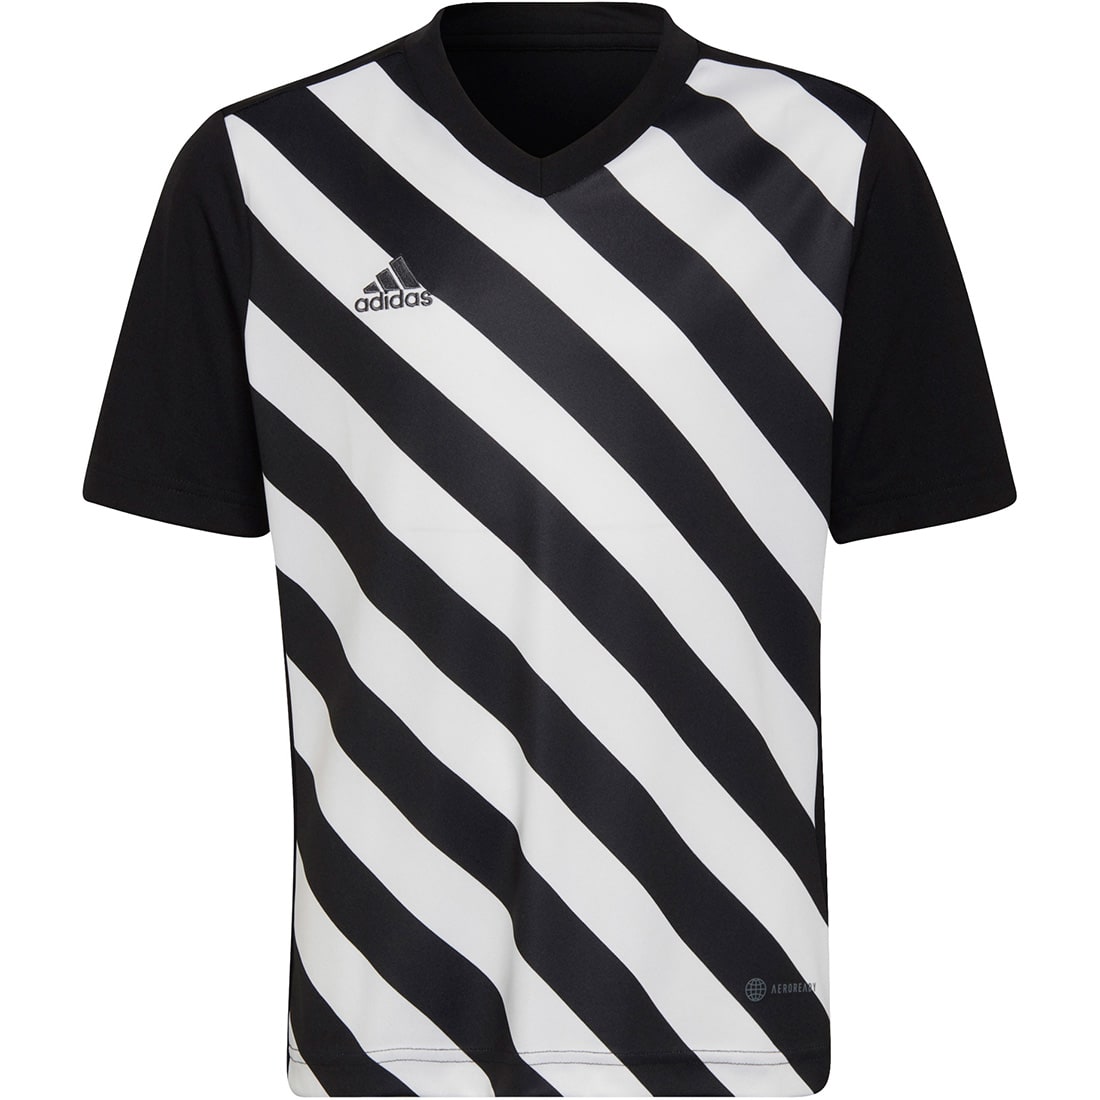 online GFX 22 Kinder Adidas Trikot kaufen Entrada schwarz-weiß